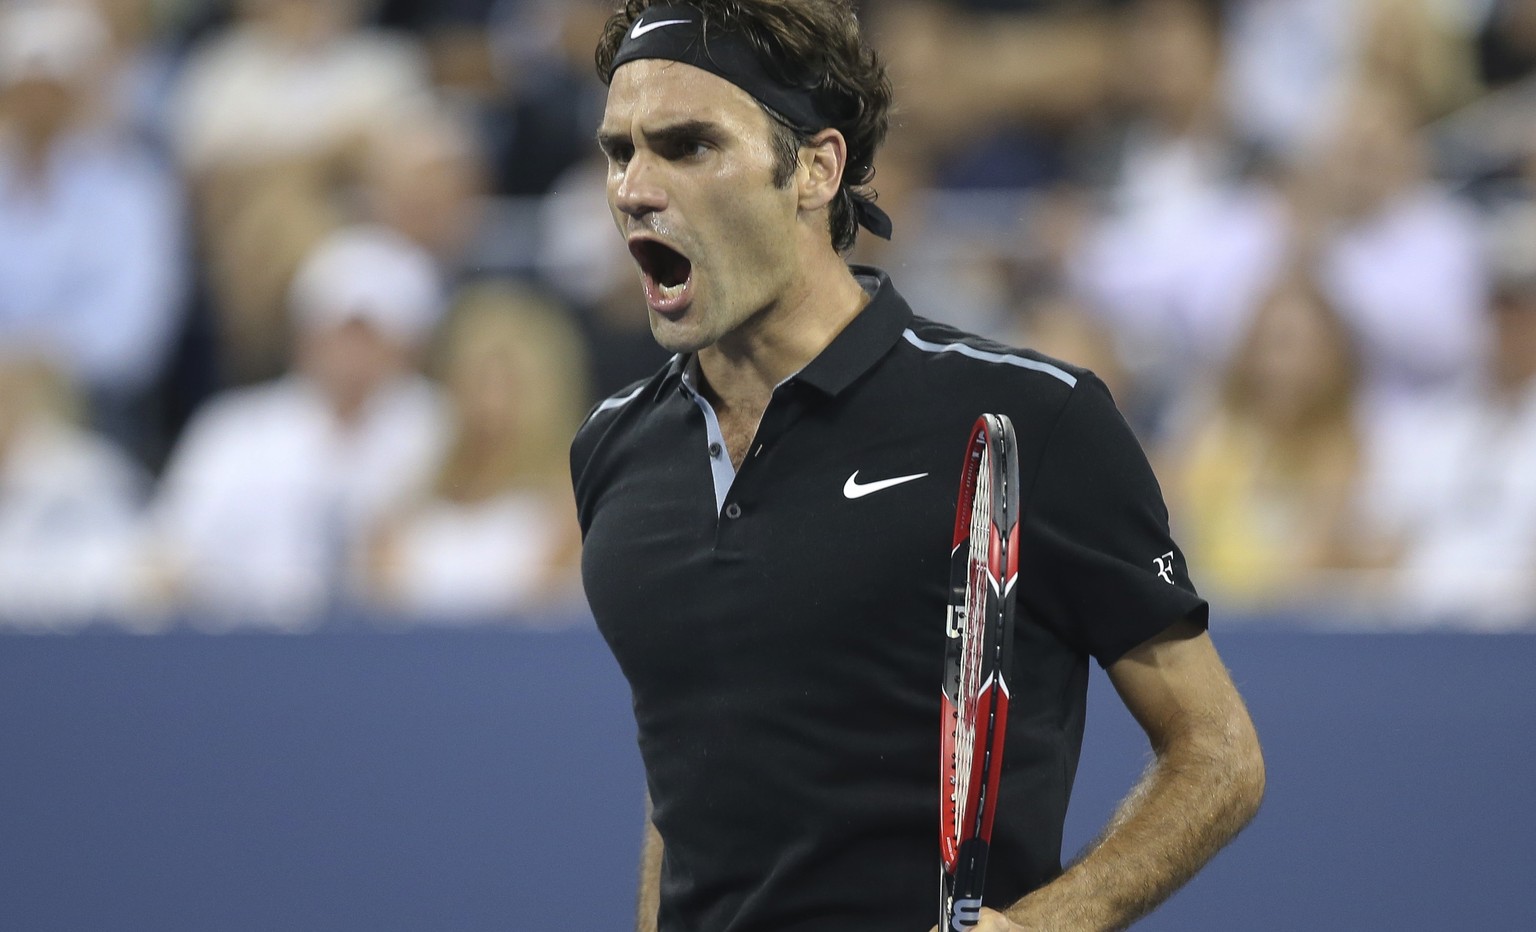 Roger Federer freut sich nach dem Fünfsatz-Sieg gegen Monfils über den Halbfinal-Einzug.